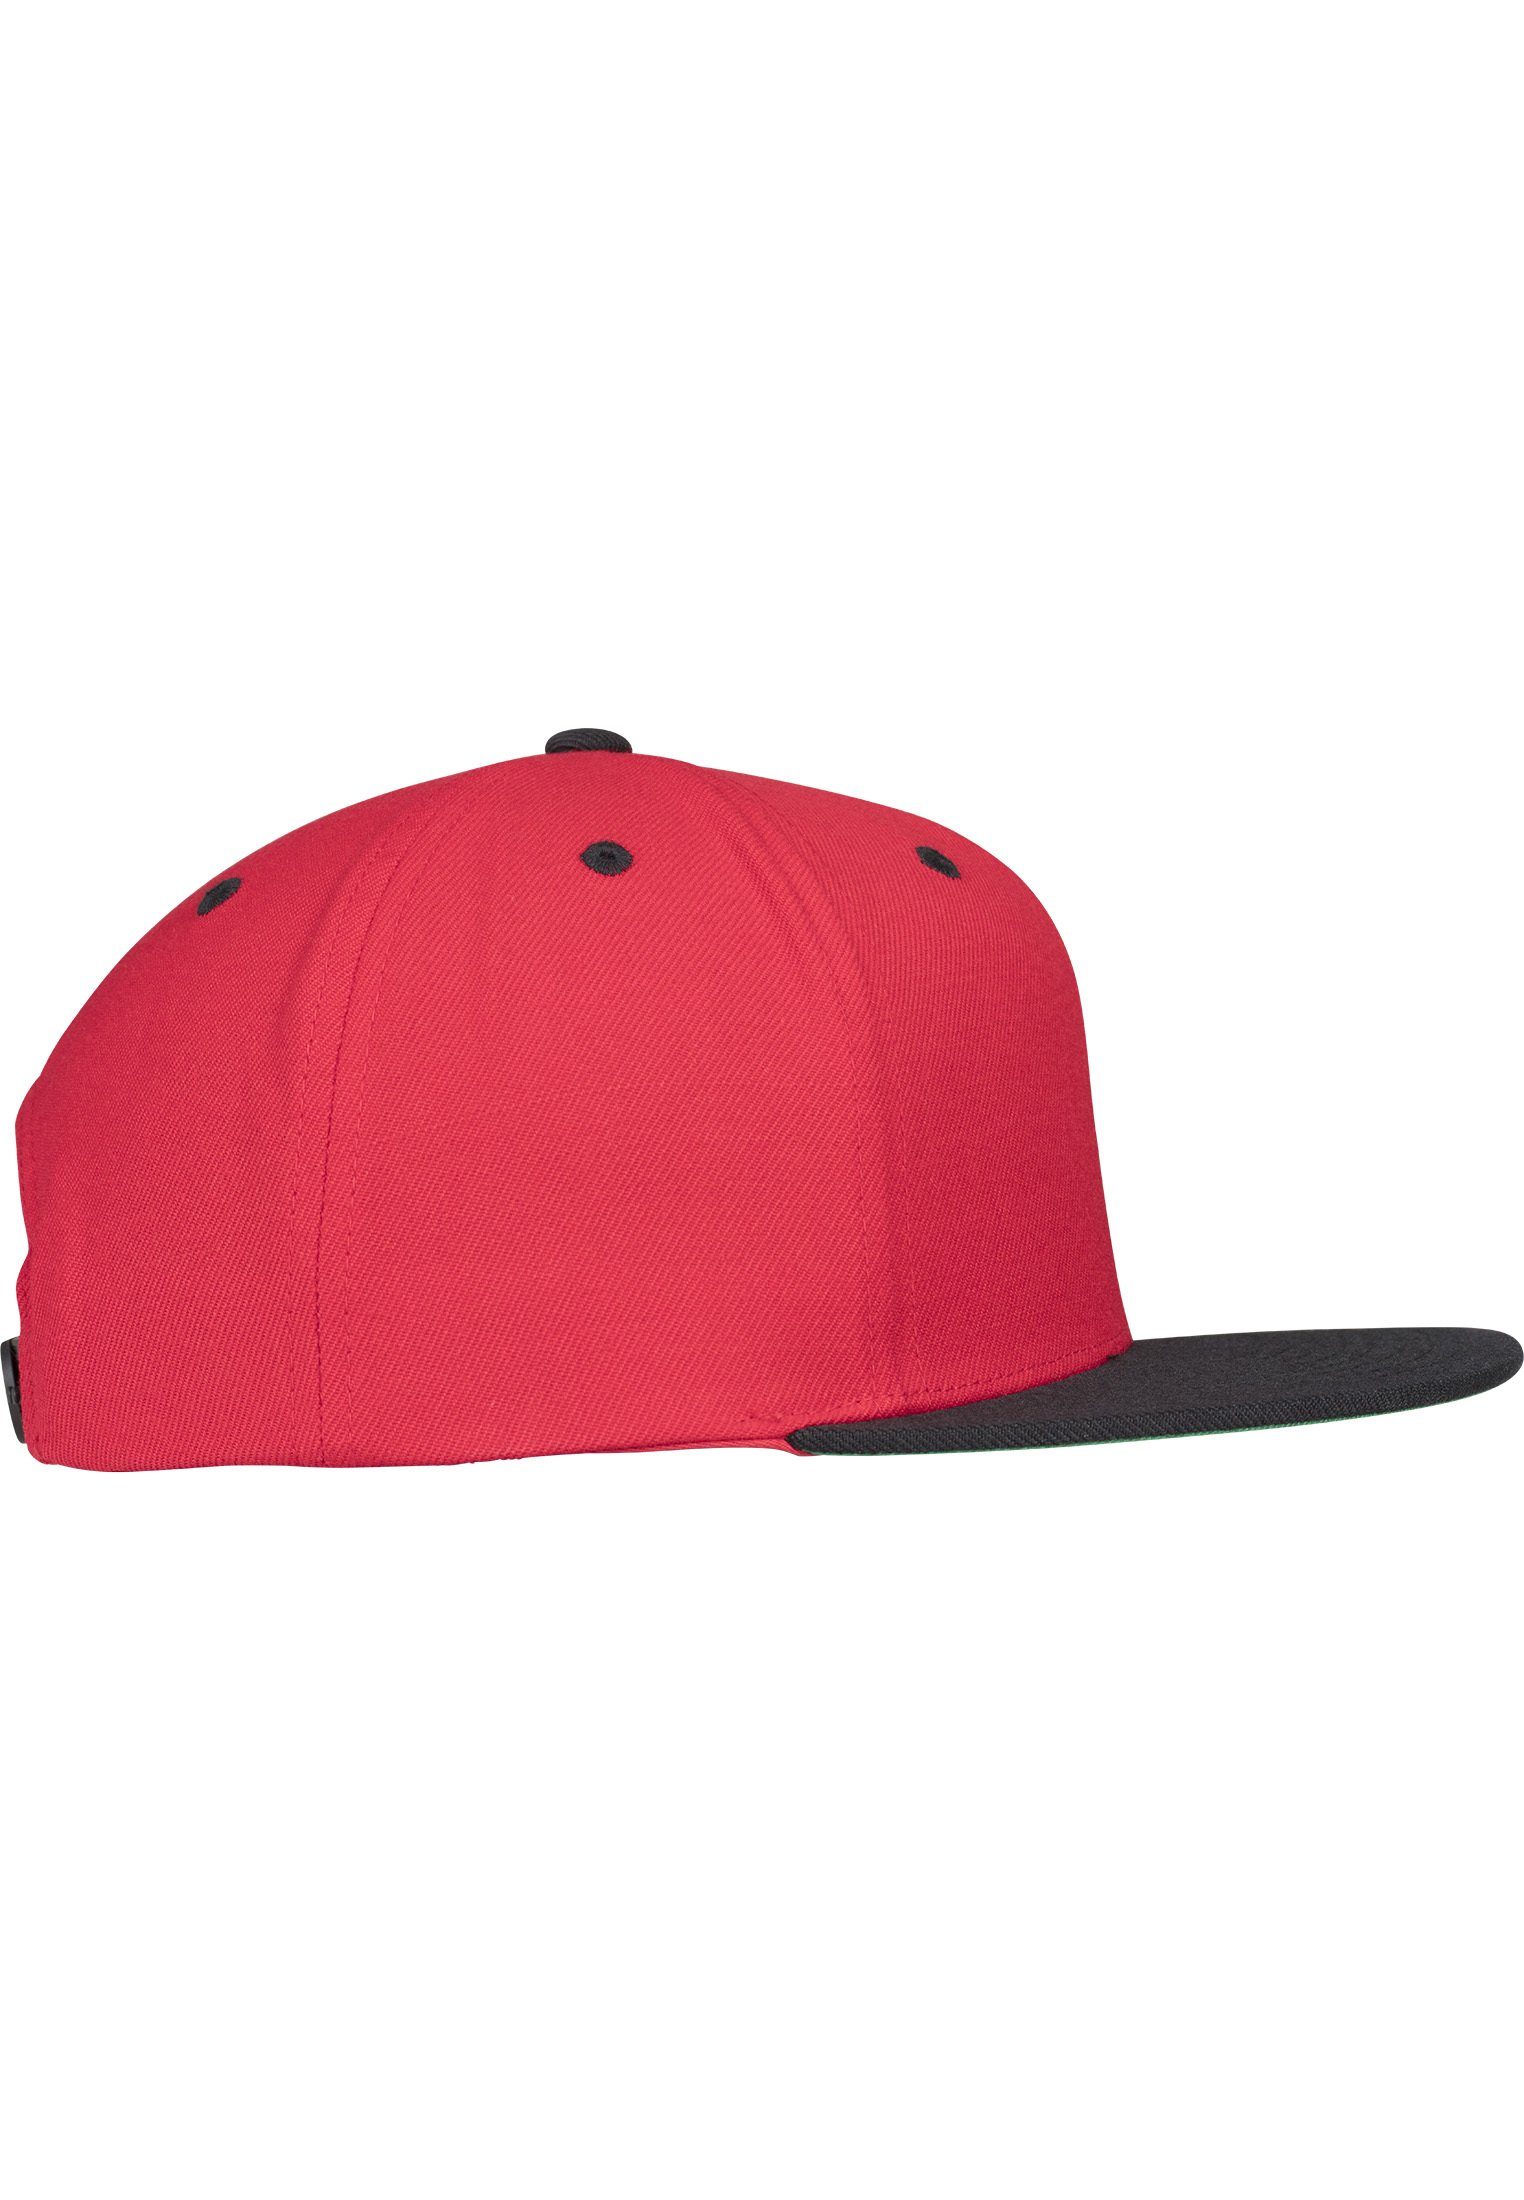 2-Tone Flexfit Cap red/black Snapback Classic Flex Snapback